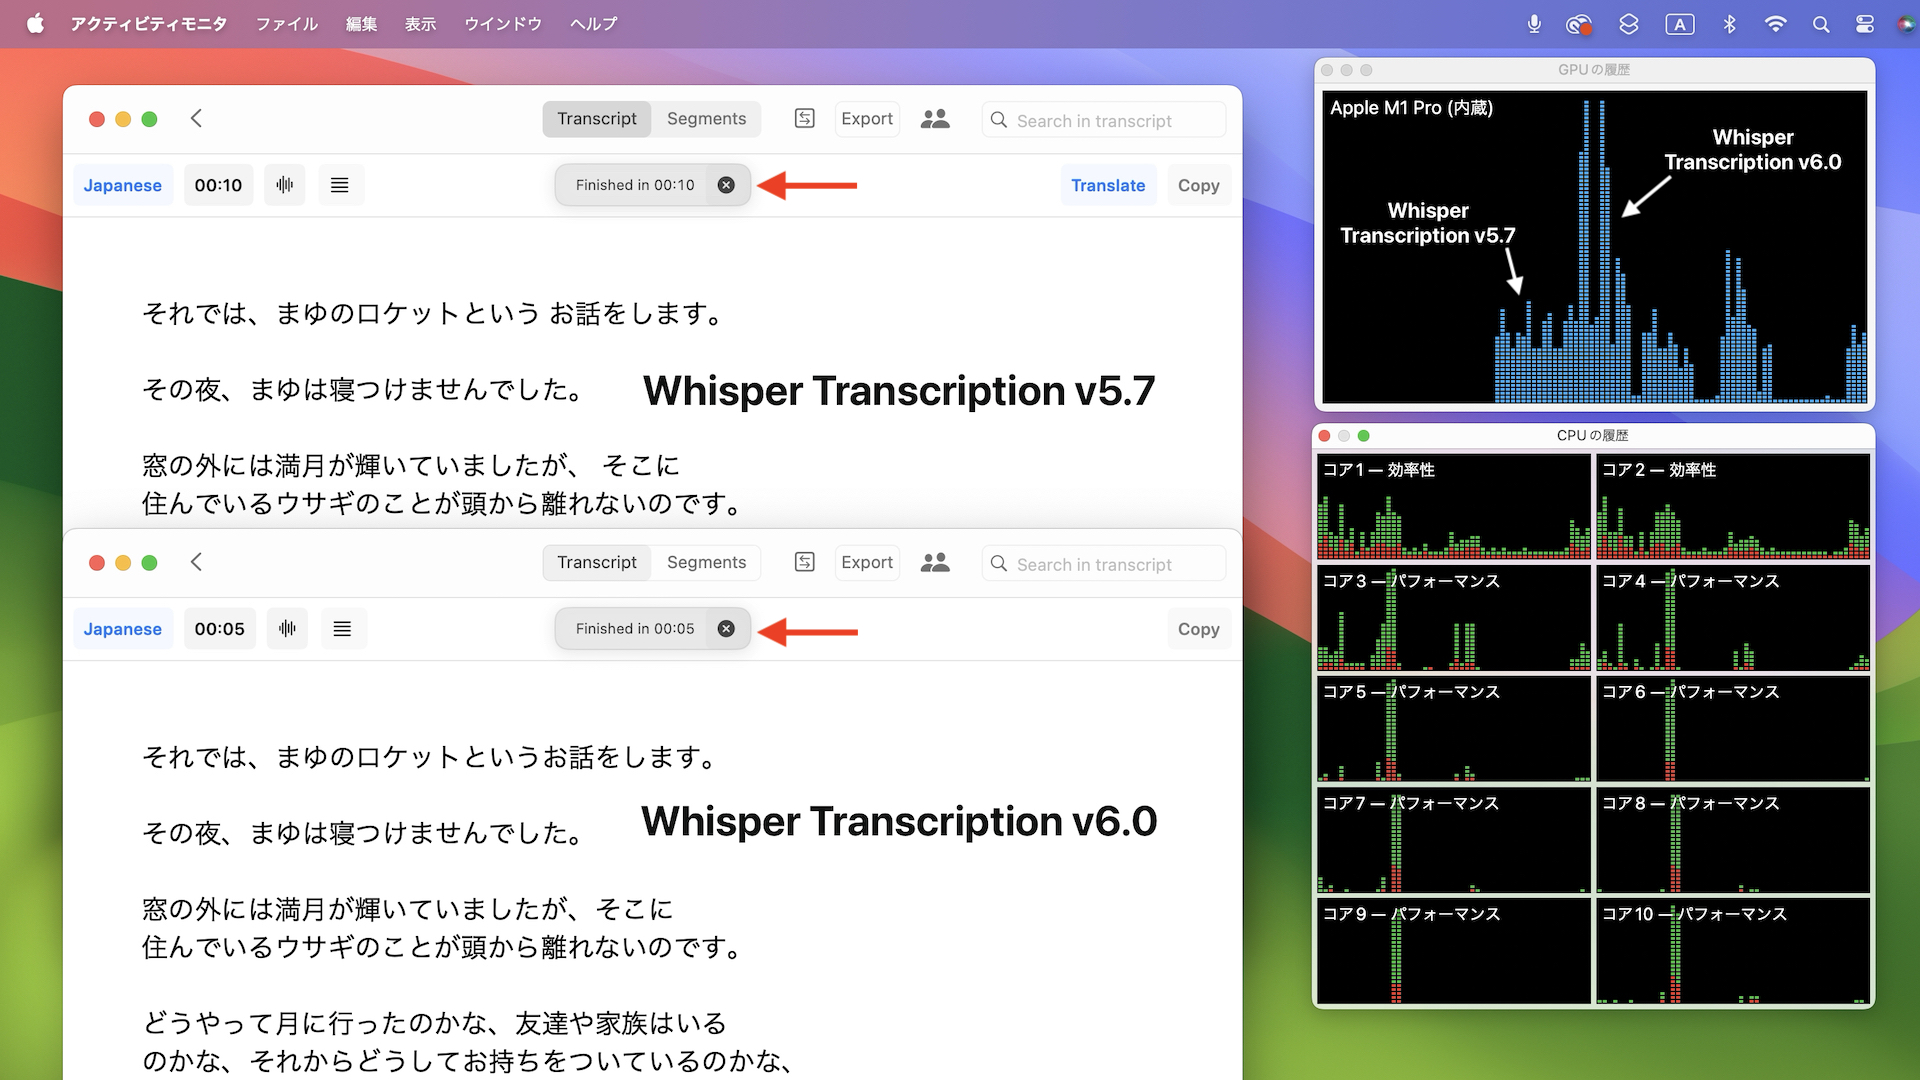 Whisper Transcription v5.7とv6.0の比較